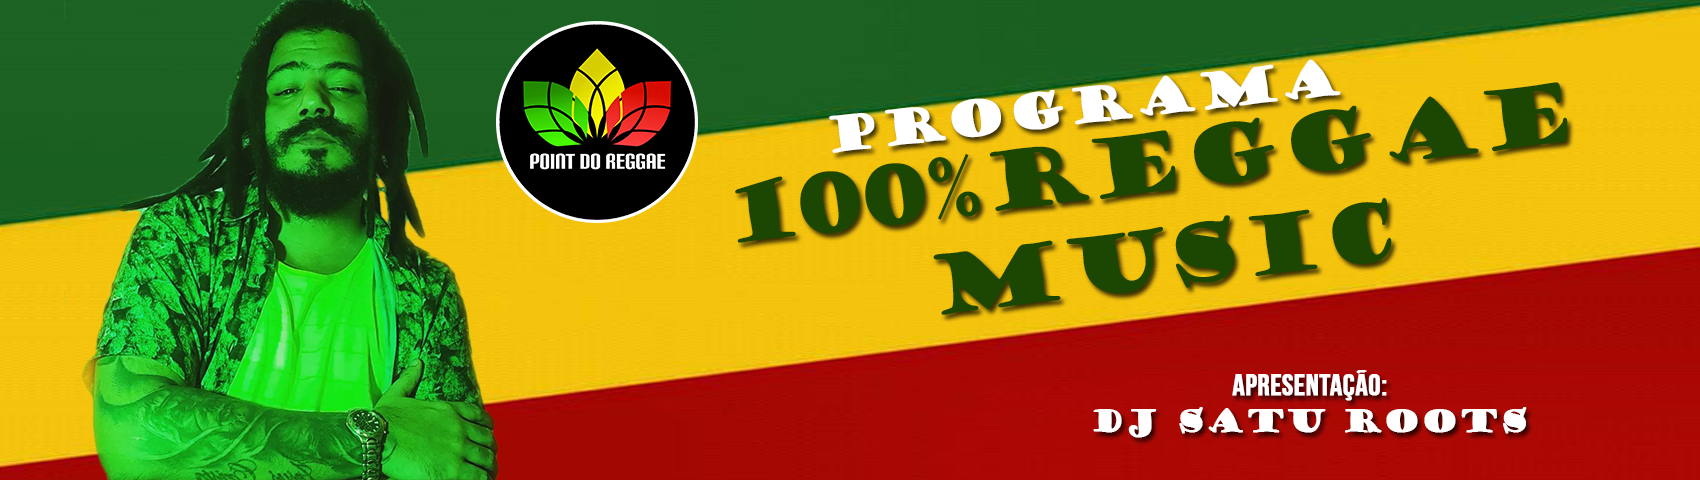 100% REGGAE MUSIC